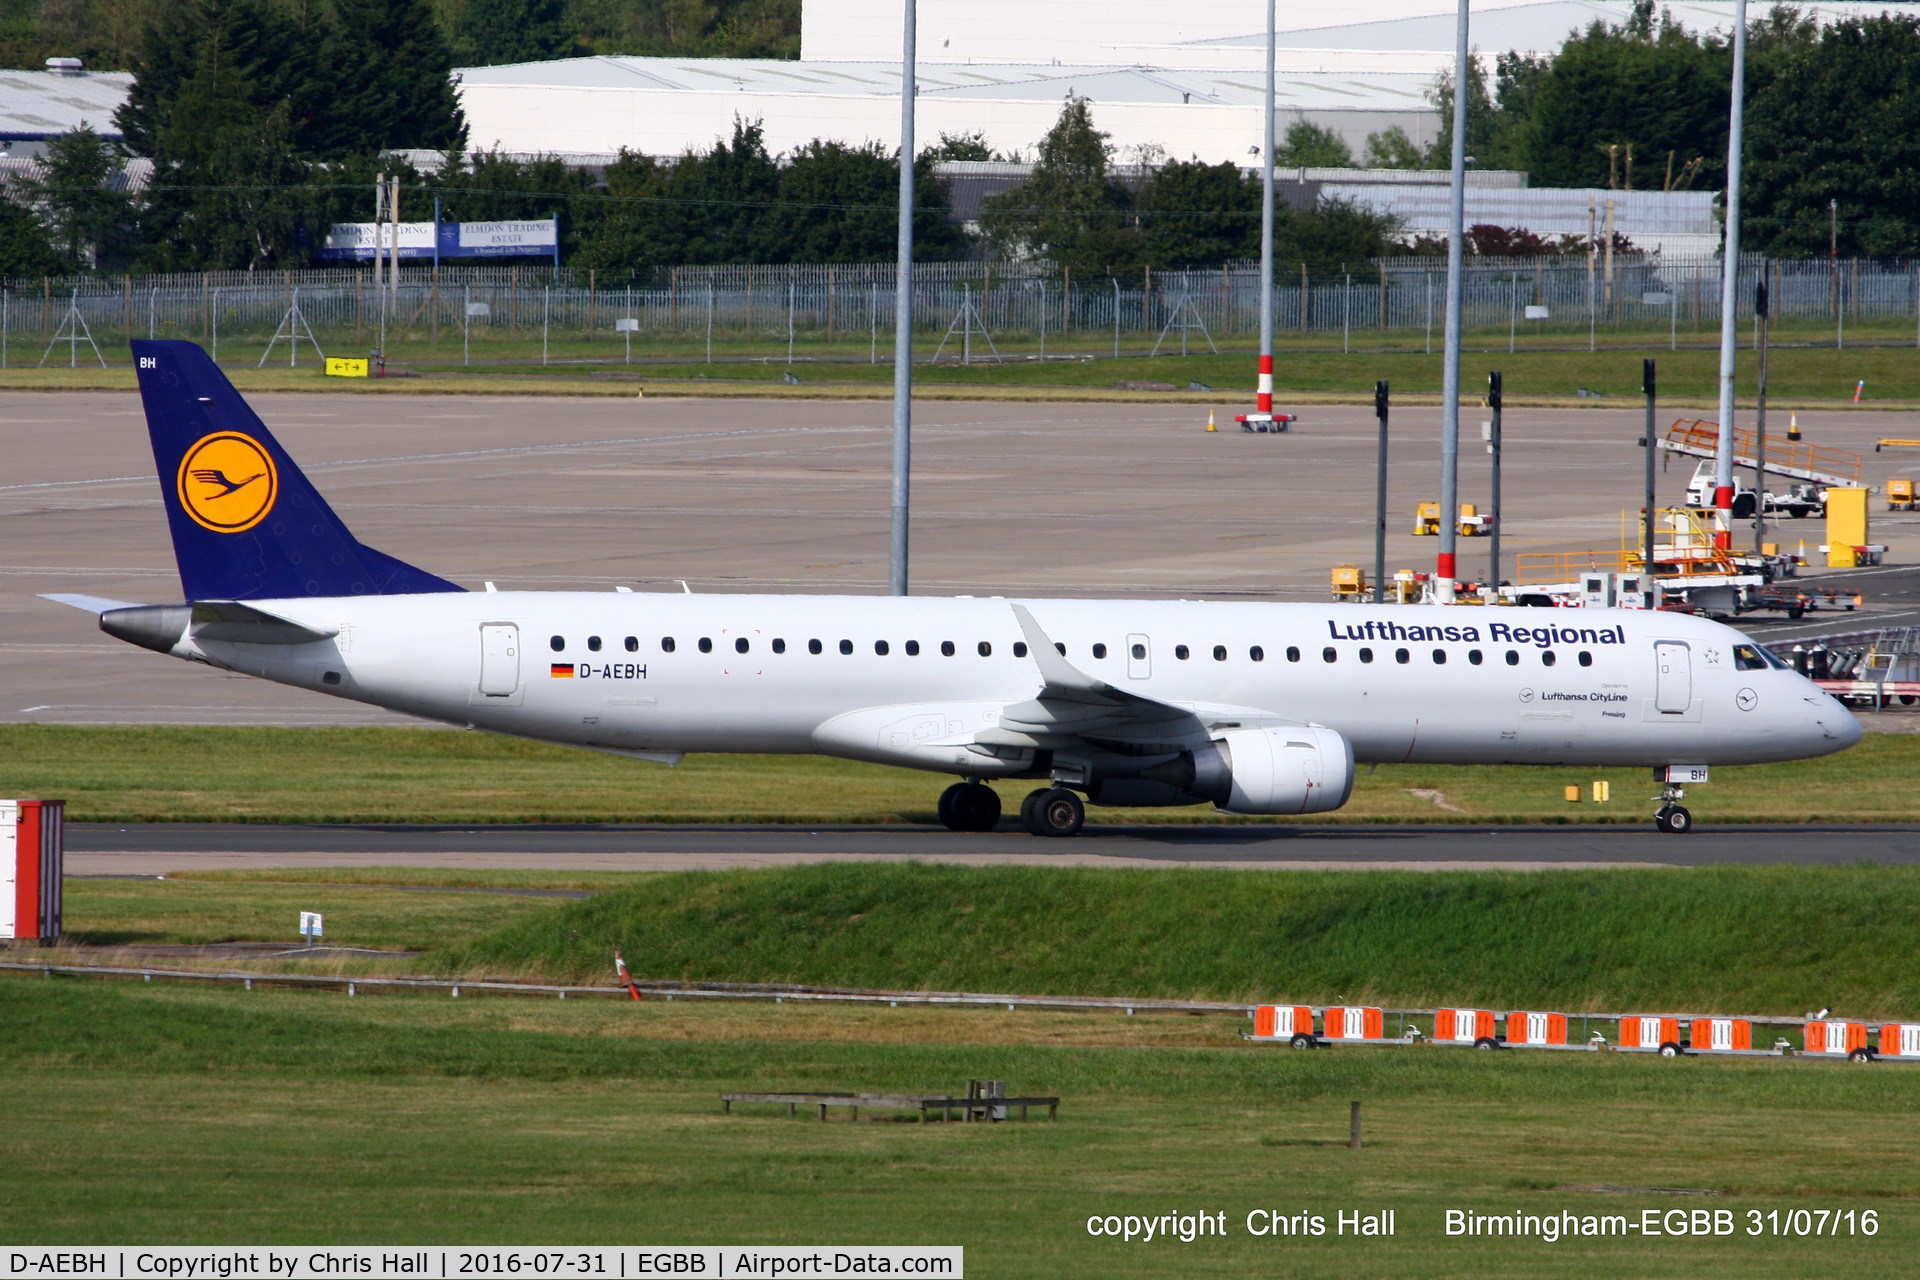 D-AEBH, 2011 Embraer 195LR (ERJ-190-200LR) C/N 19000447, Lufthansa Regional